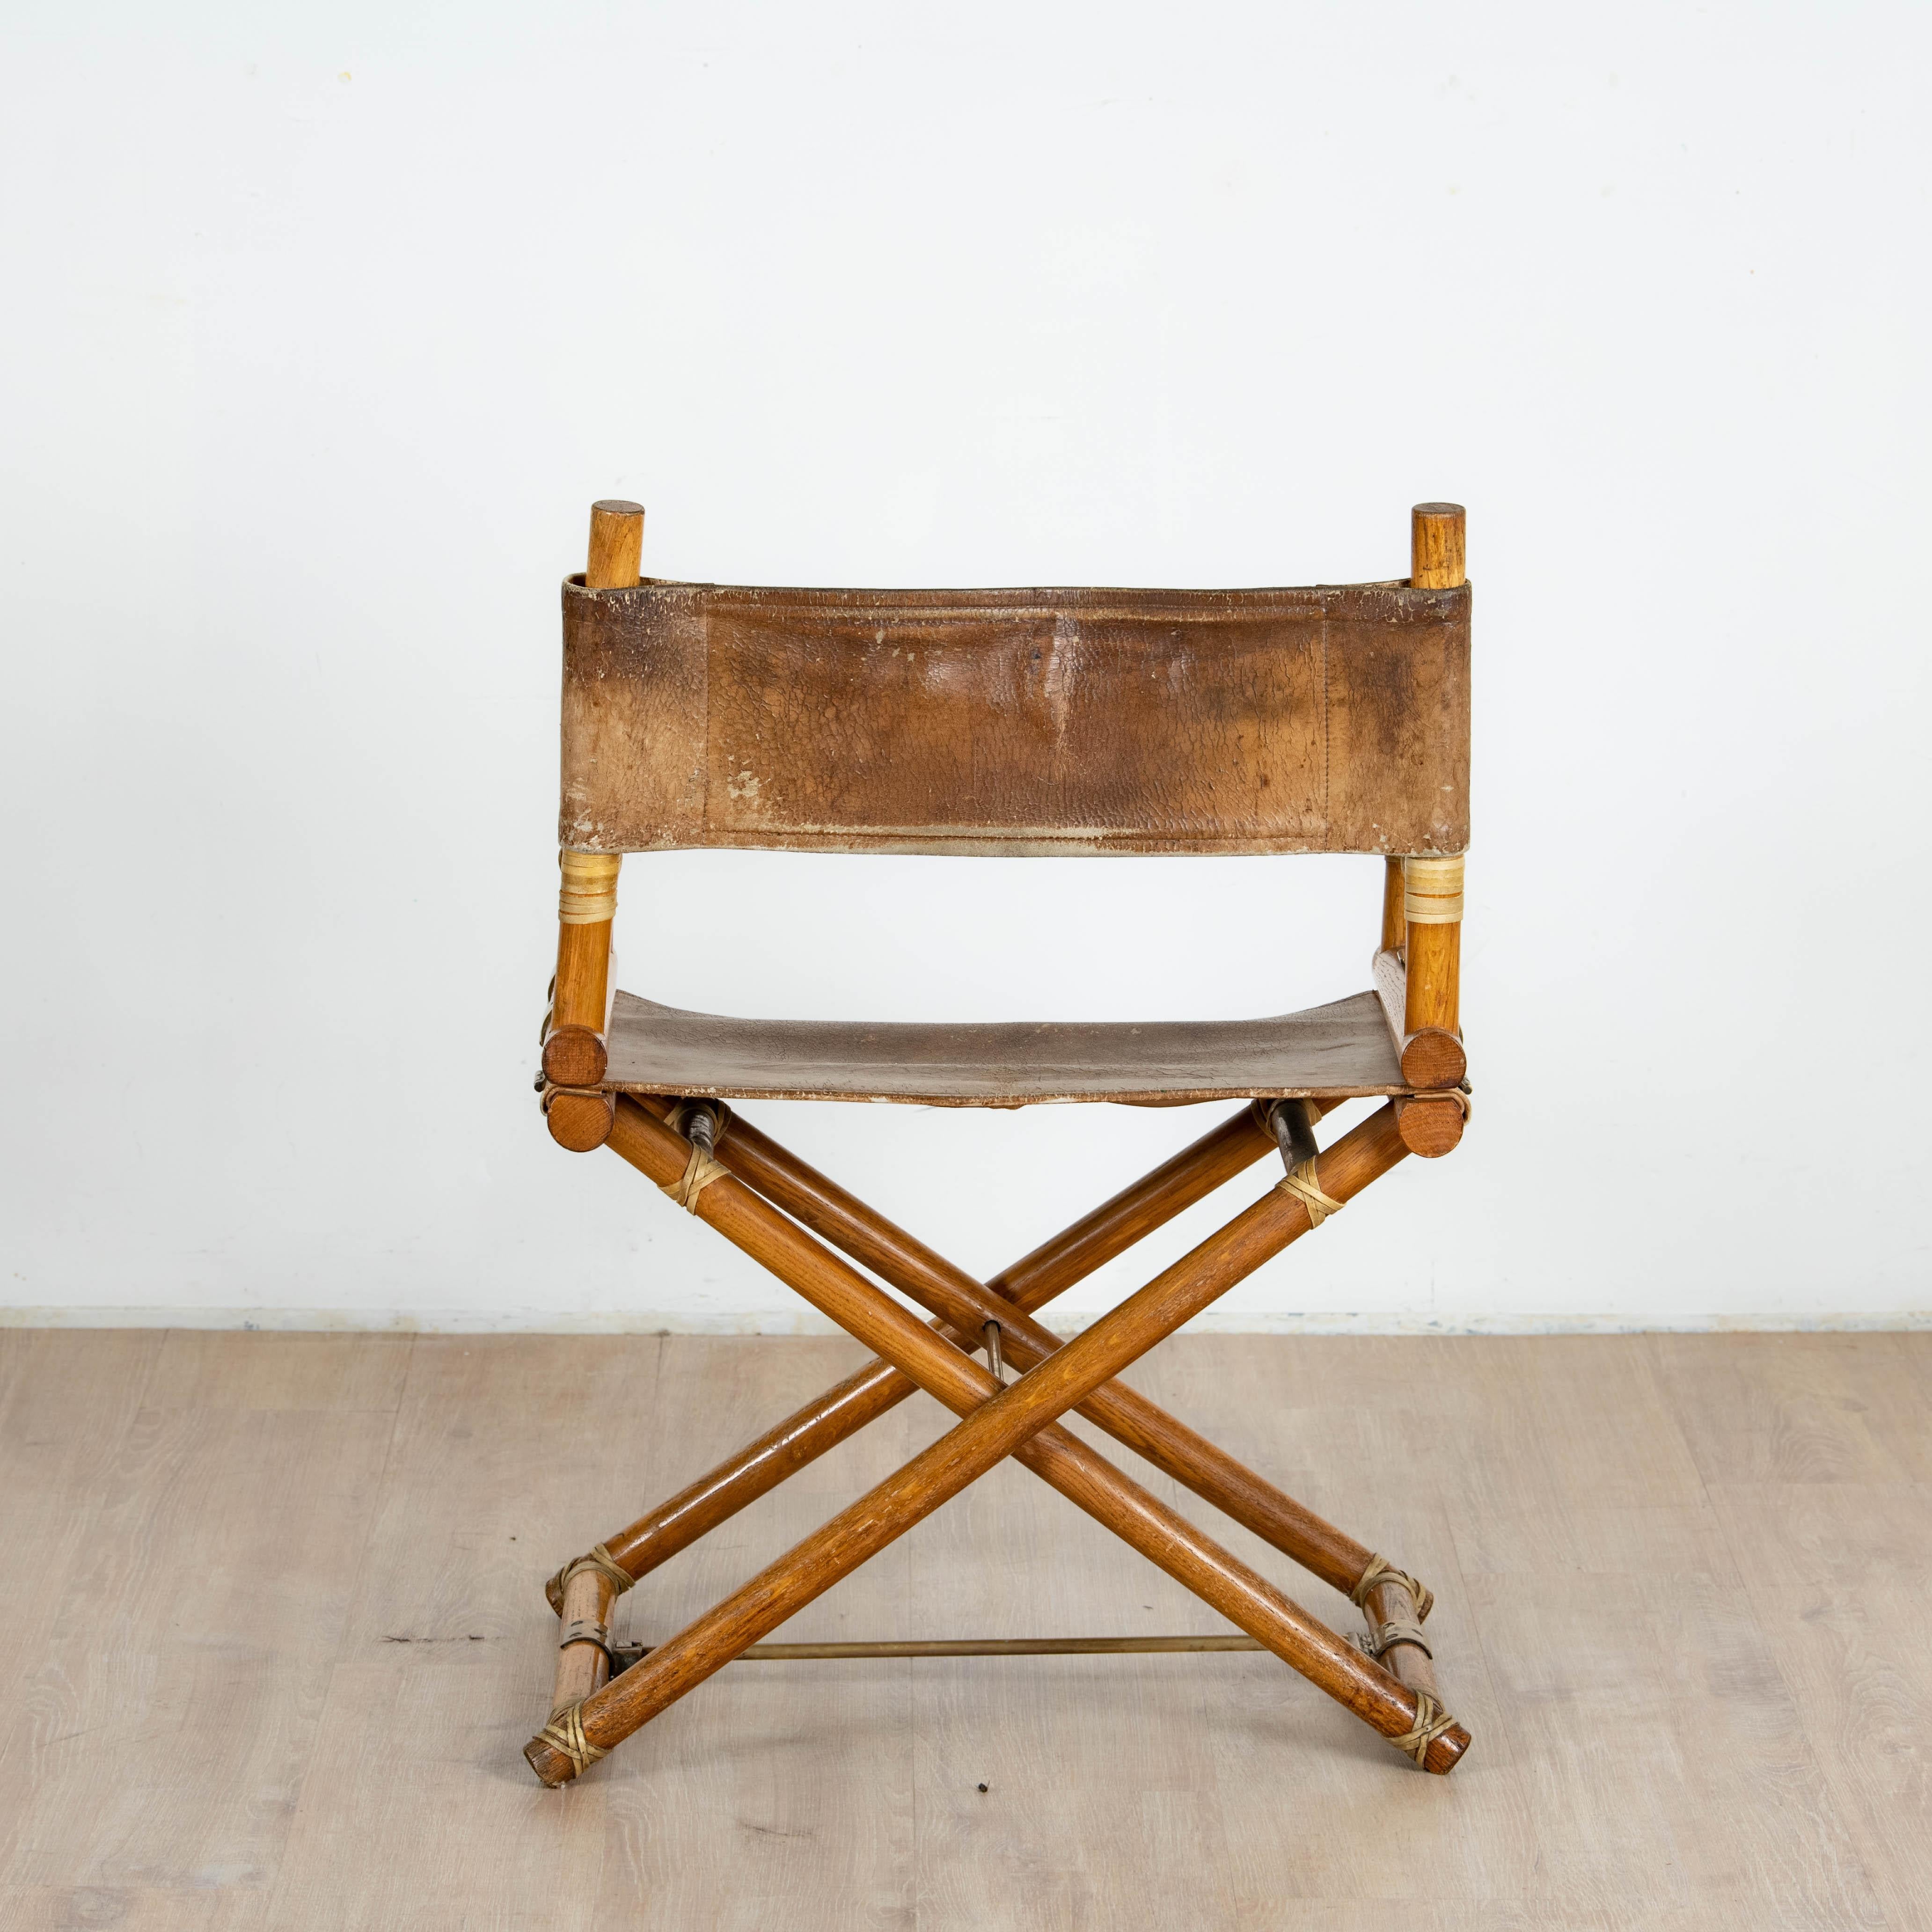 Chaise de réalisateur Lyda Levi McGuire en bois et cuir avec détails en laiton, 1970.

Cuire et bois d'époque la chaise réalisateur est sous son meilleur jour grace au design de Lyda levi au éditions McGuire. travail italien des annees 1970.